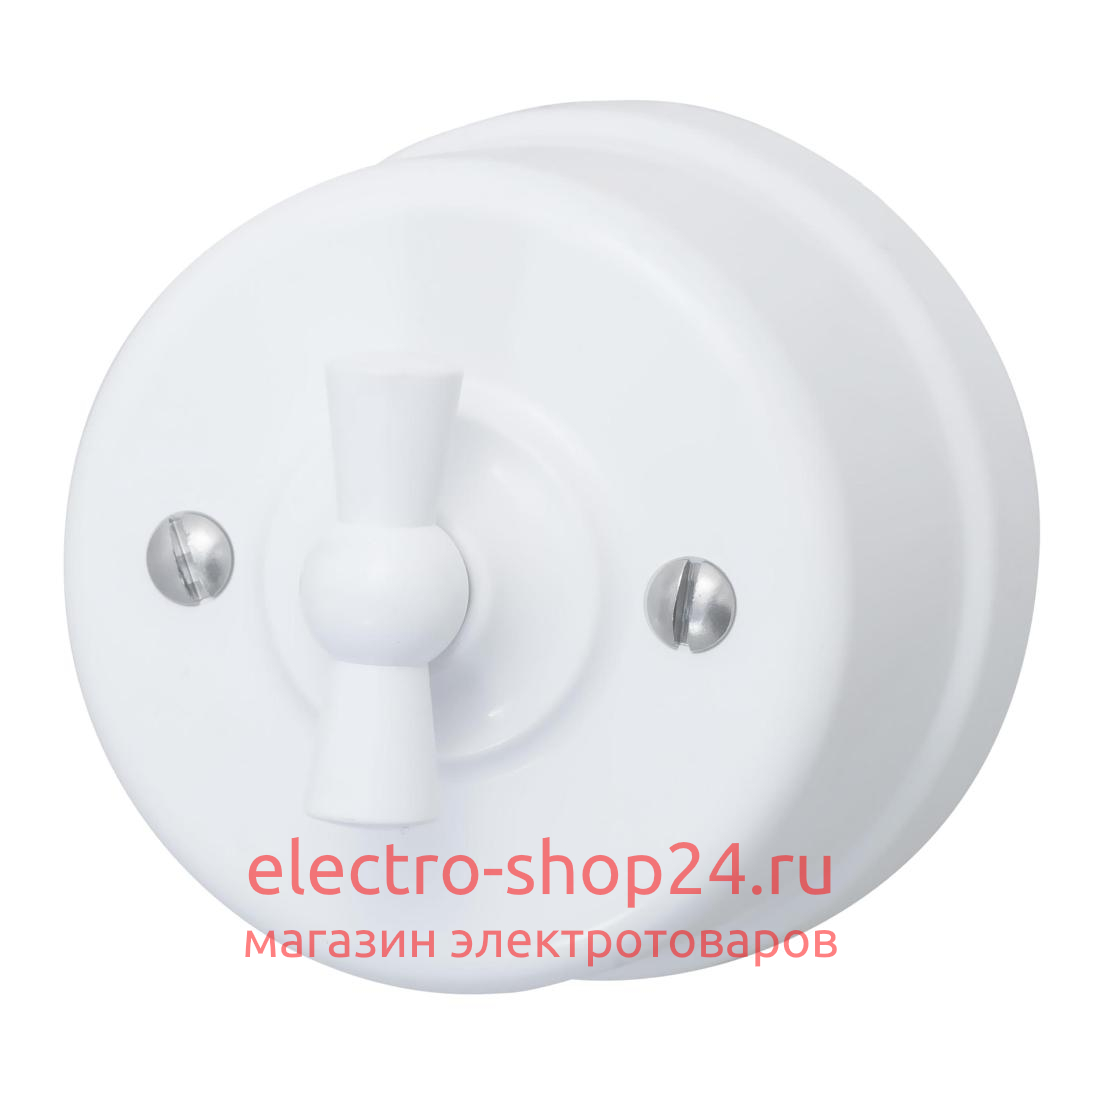 Выключатель проходной 1-клавишный ОП Bironi Лизетта пластик цвет белый B1-201-21 - магазин электротехники Electroshop